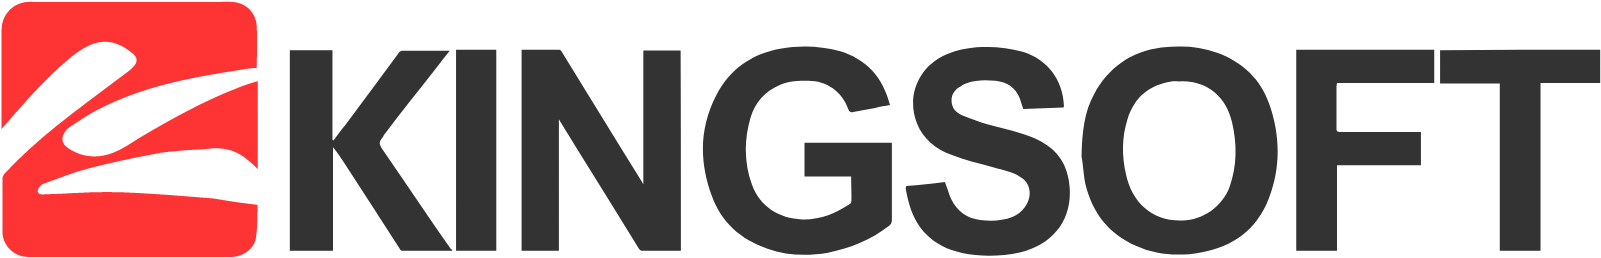 Kingsoft logo large (transparent PNG)